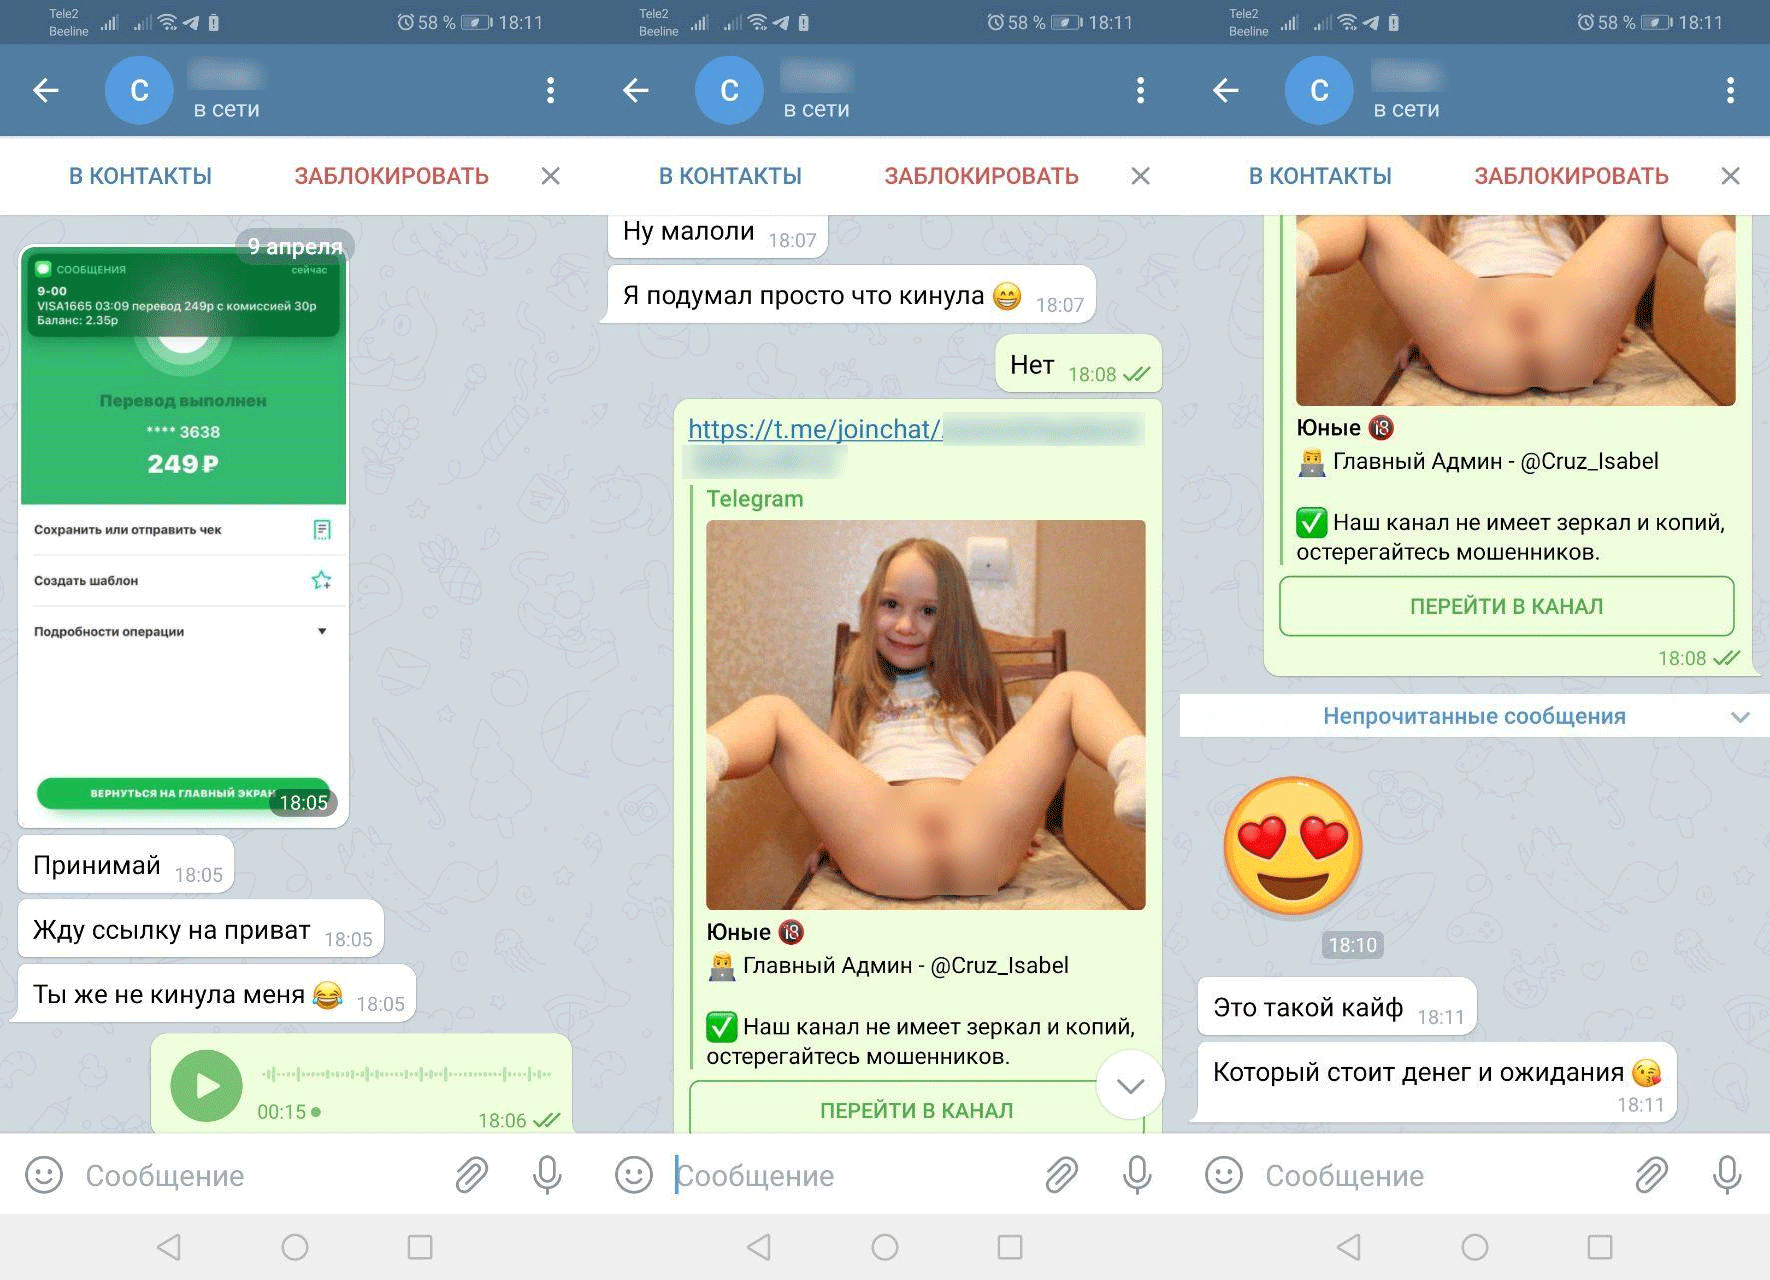 Best telegram groups porn